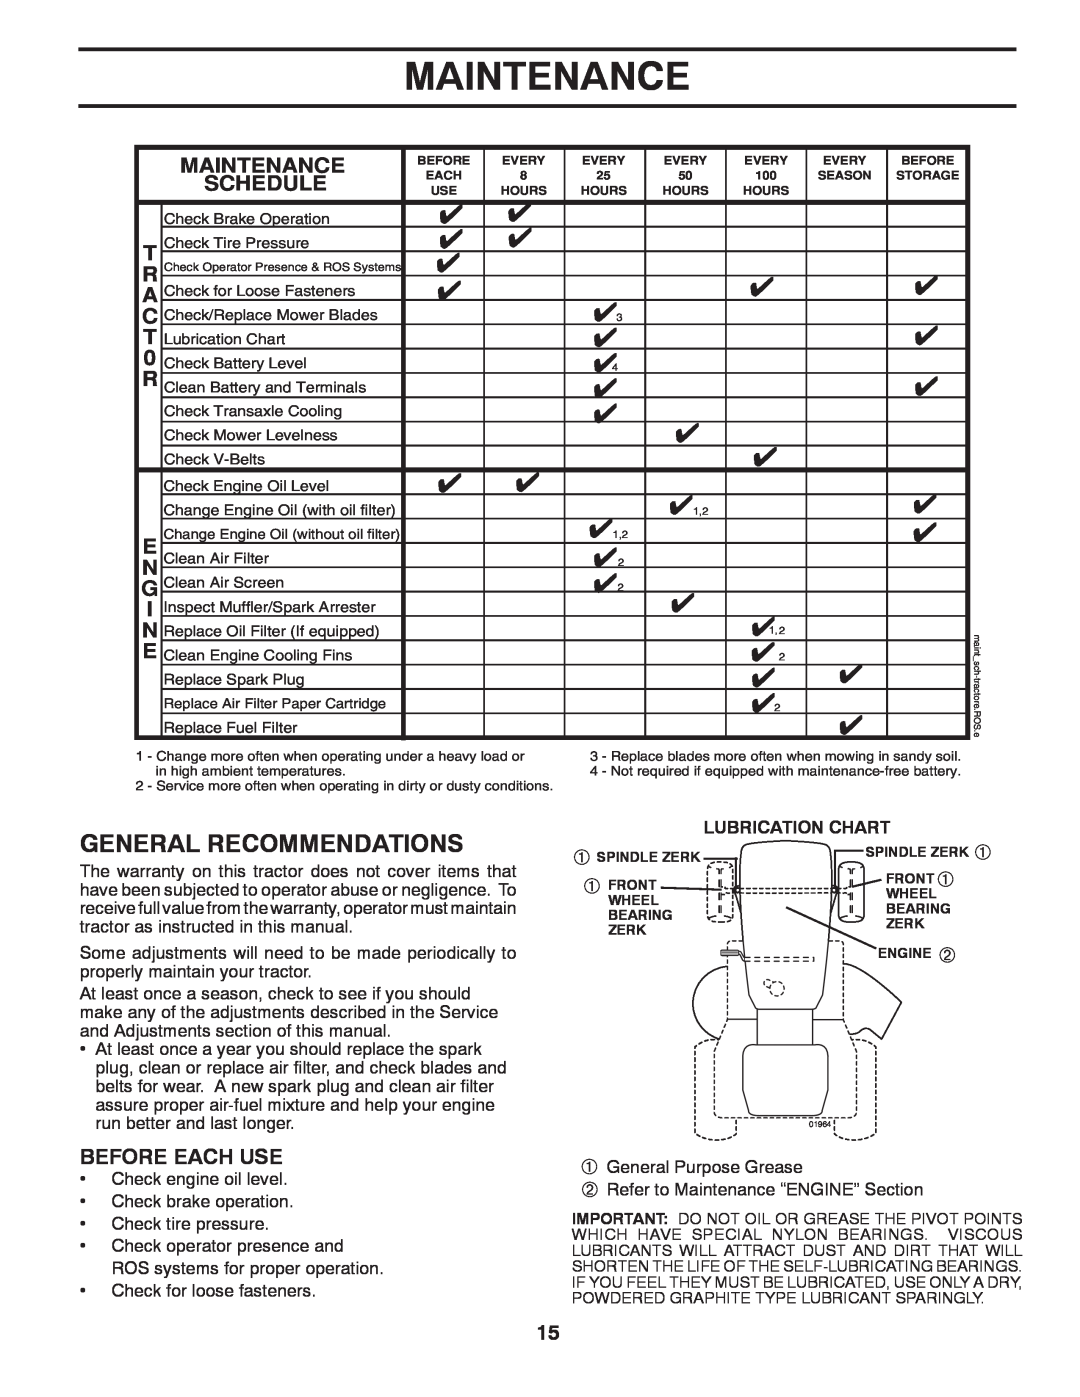 Poulan 96042005000, 413106 manual Maintenance, Lubrication Chart 